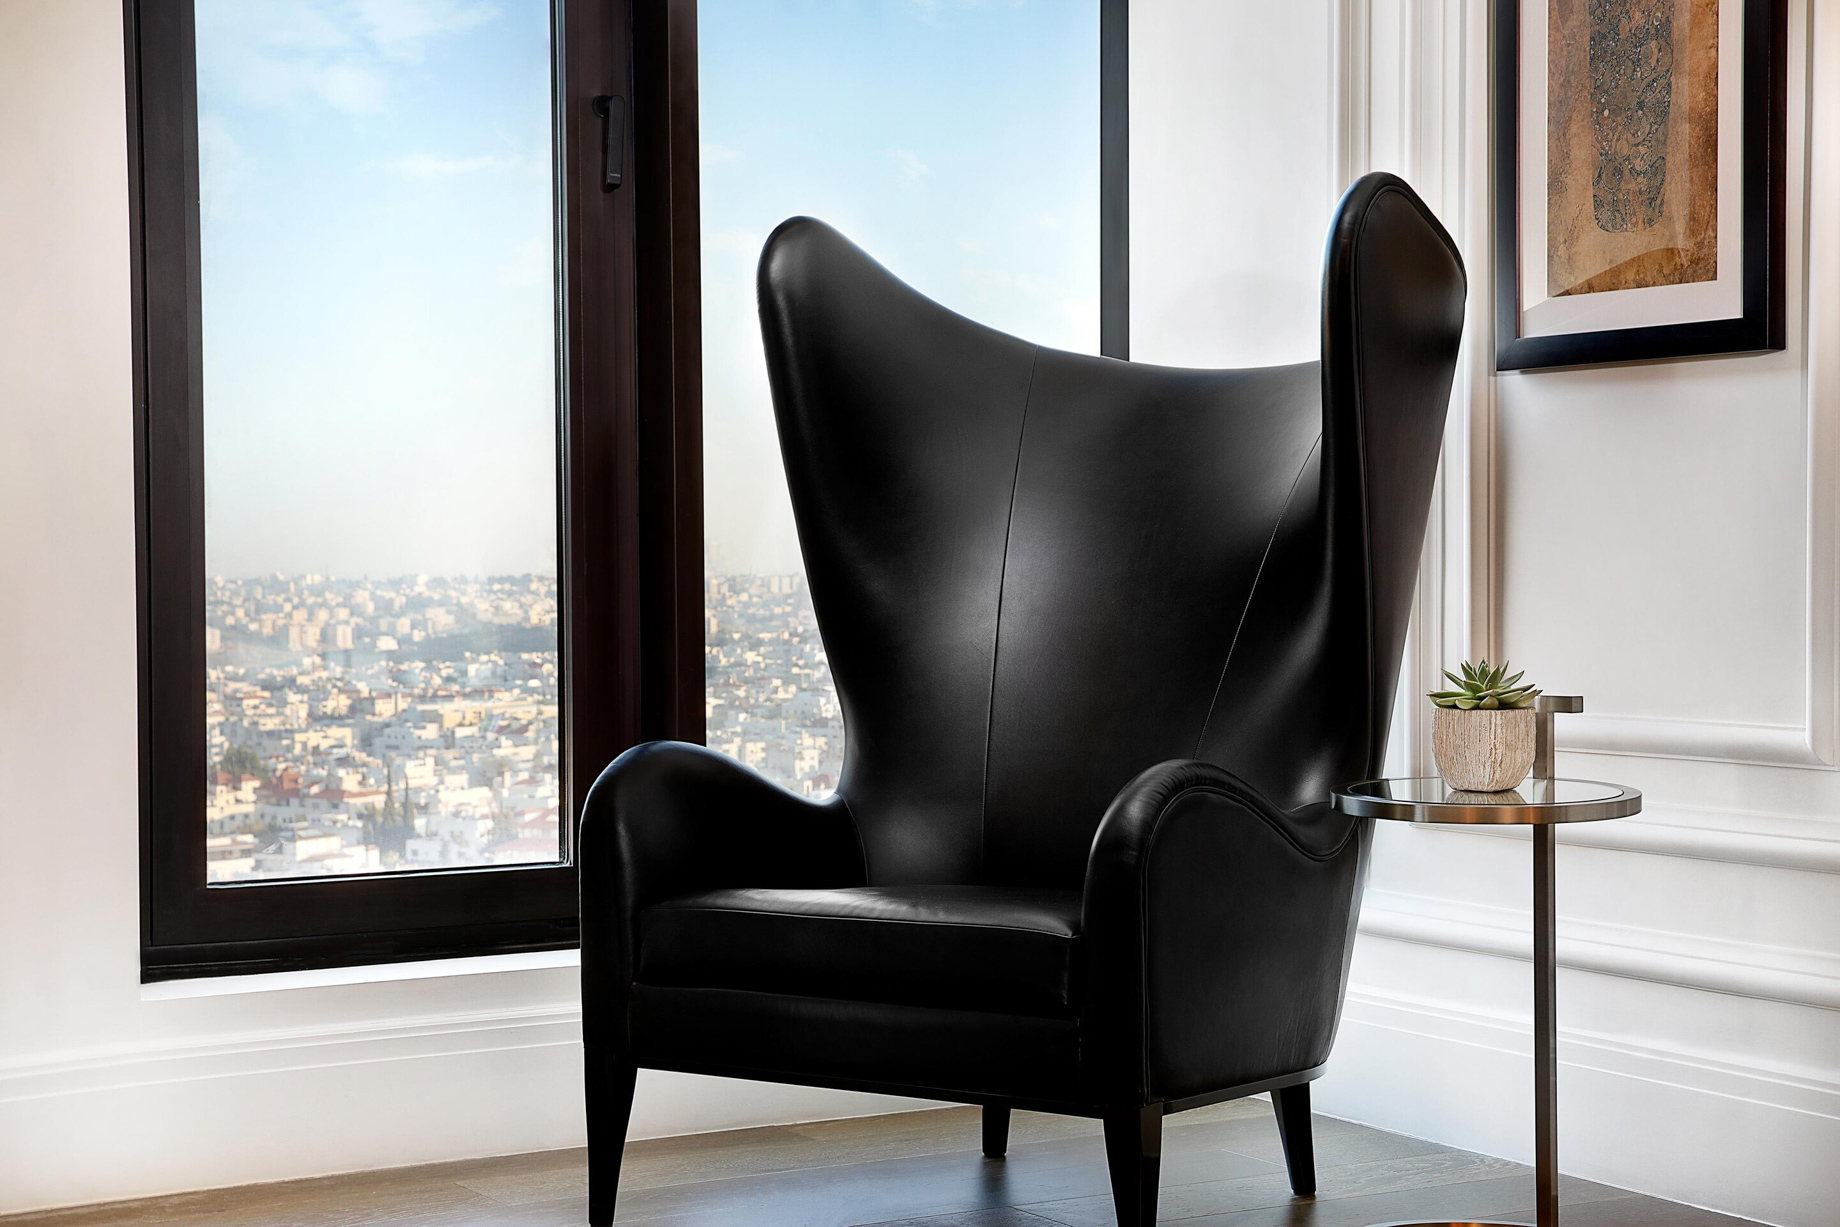 The St. Regis Amman Hotel – Amman, Jordan – Royal Suite Chair View